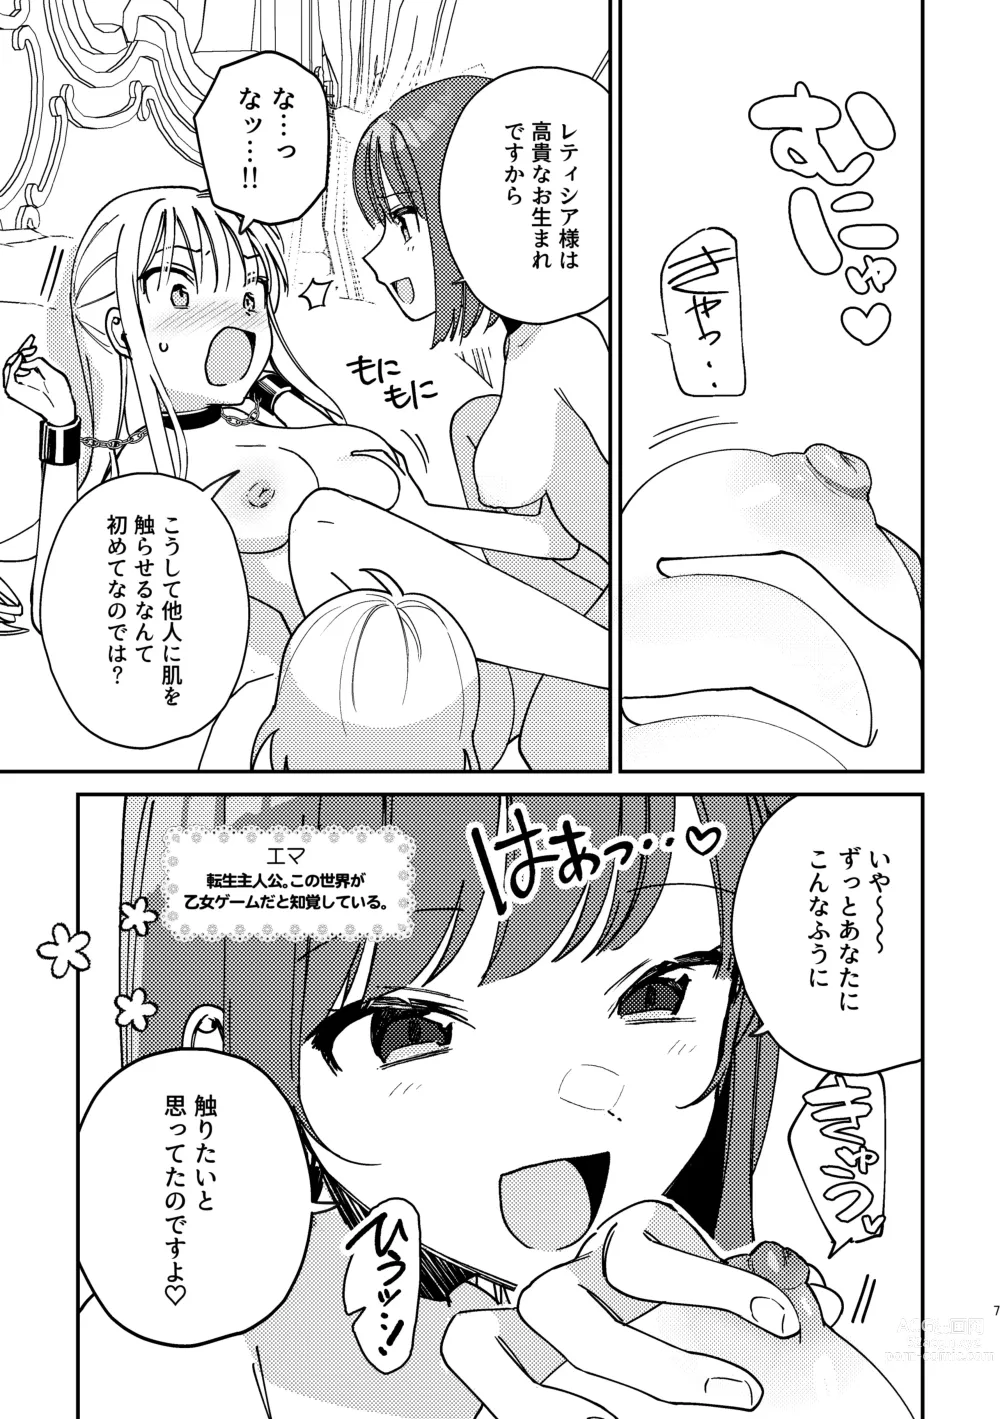 Page 8 of doujinshi 3P Yuri Ecchi Anthology